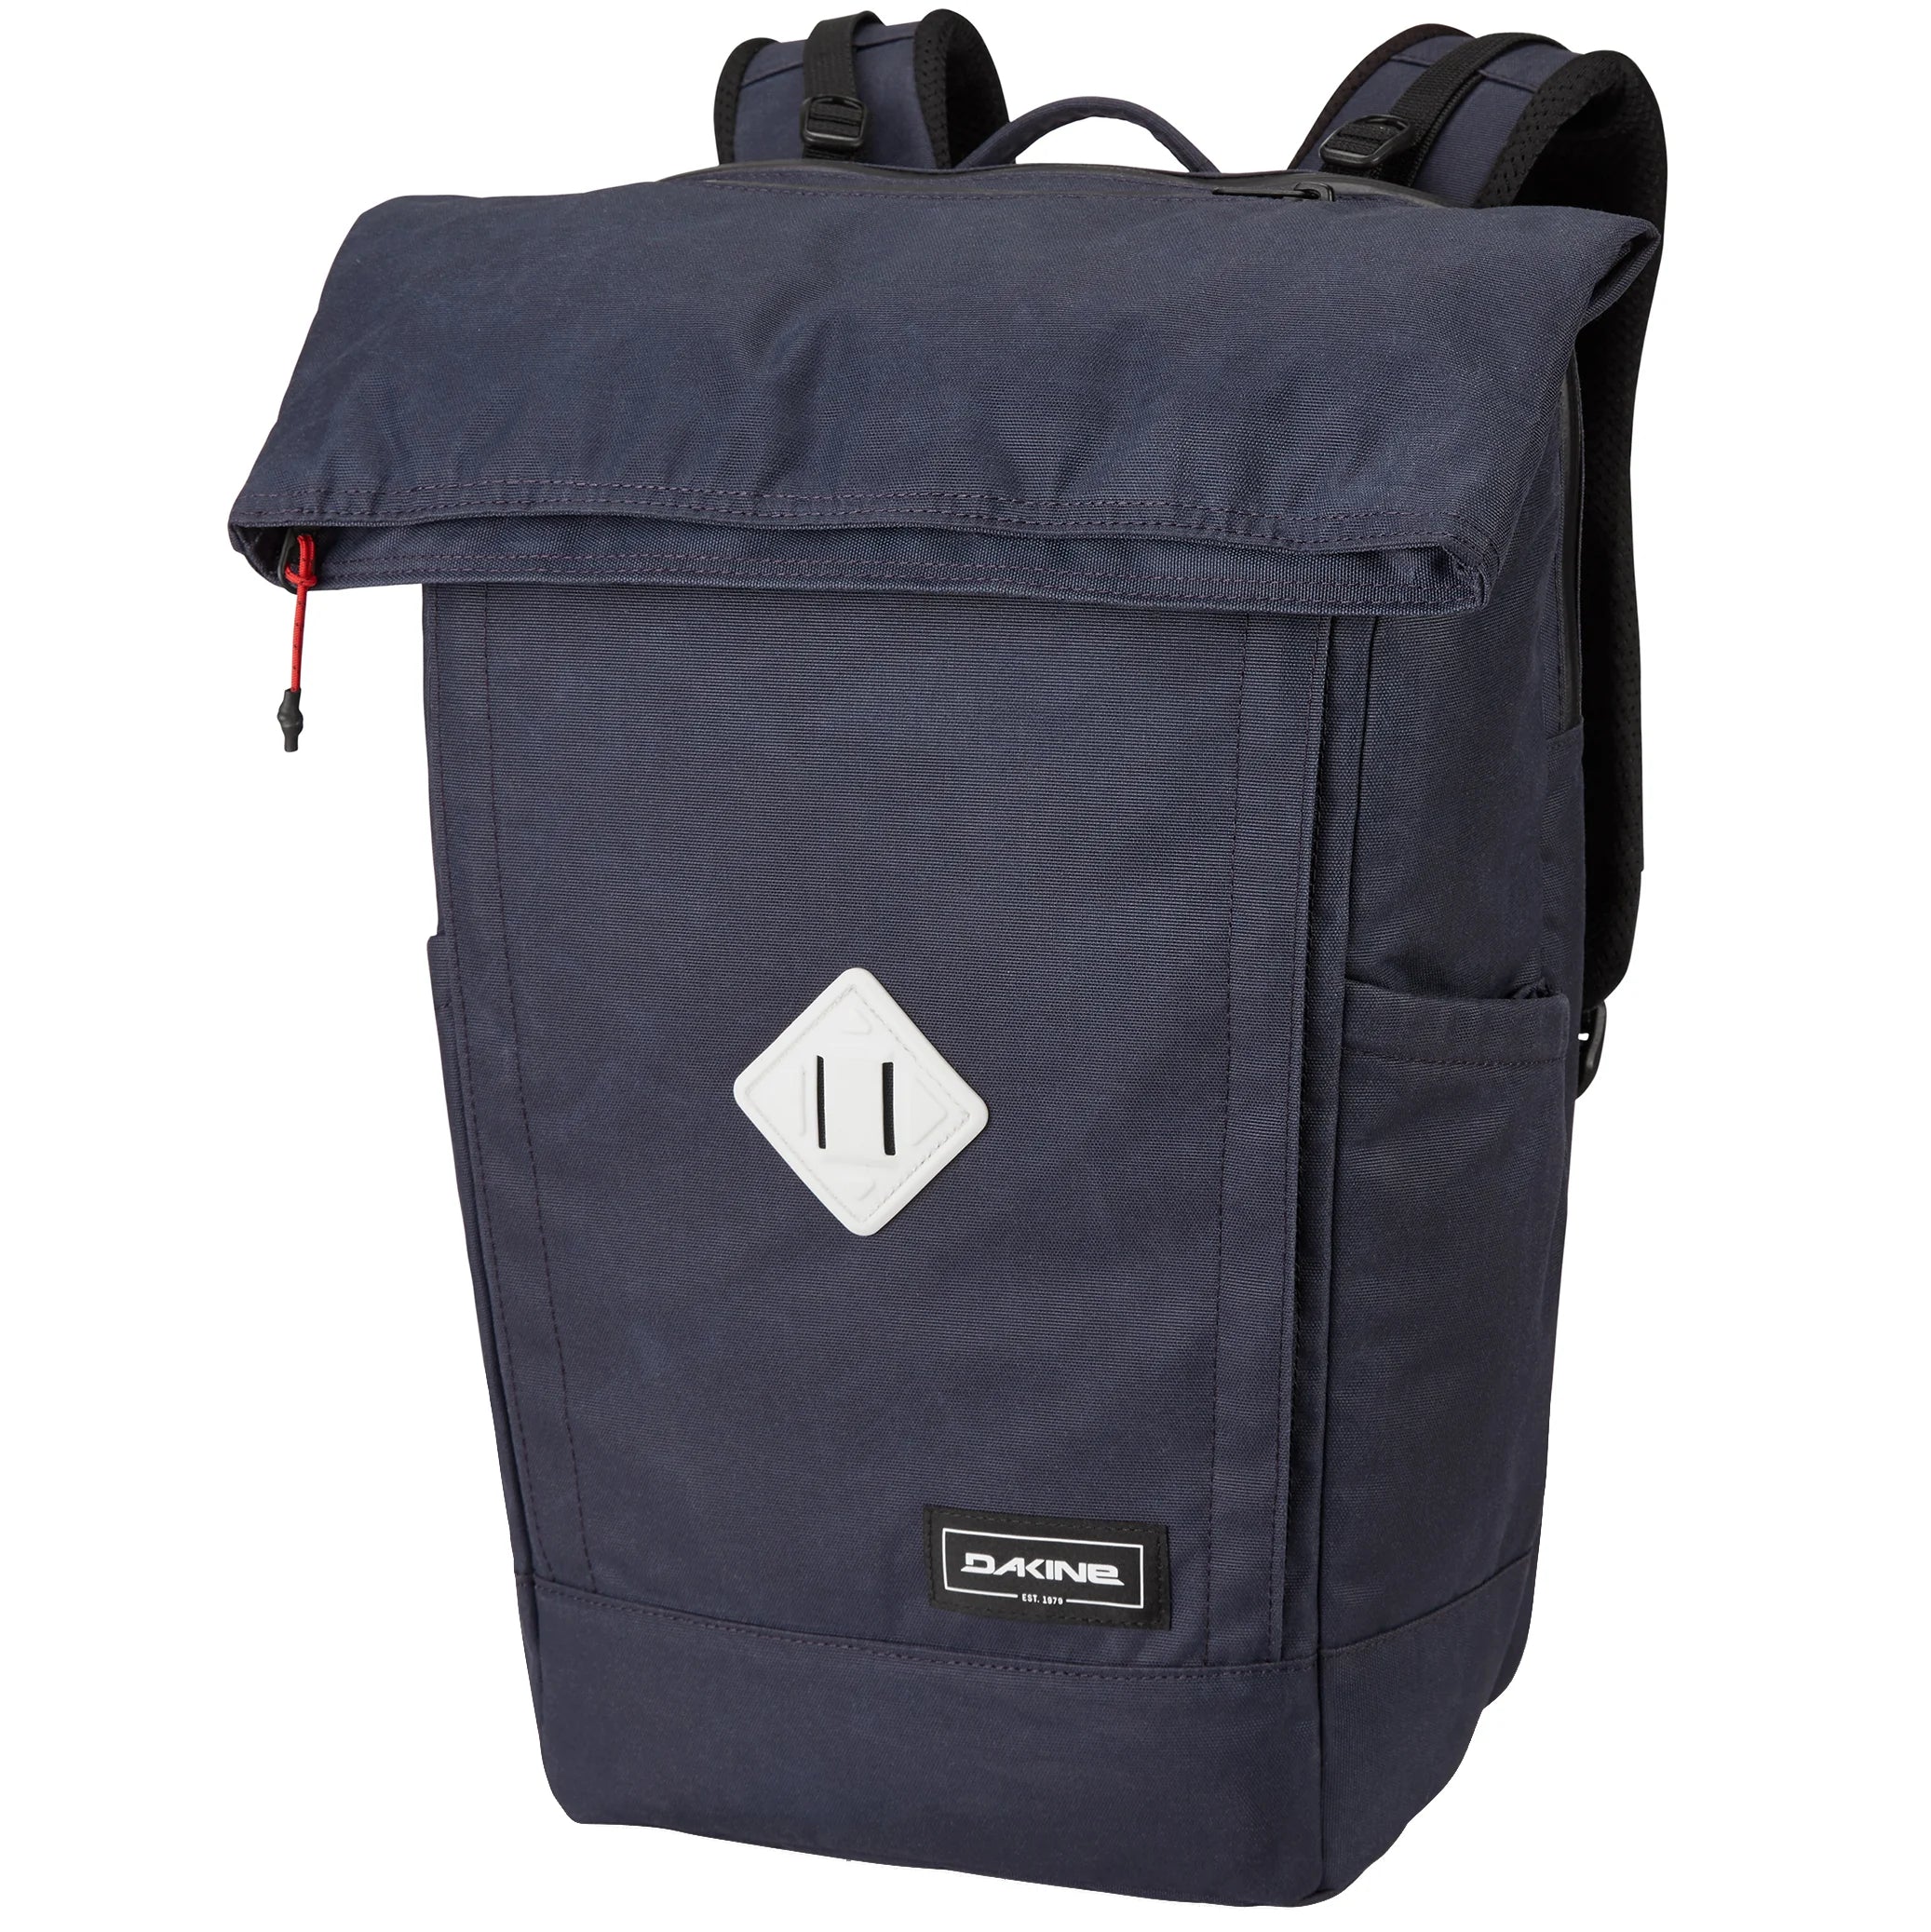 Dakine Packs & Bags Infinity Pack 21L Backpack 46 cm - dark ivy